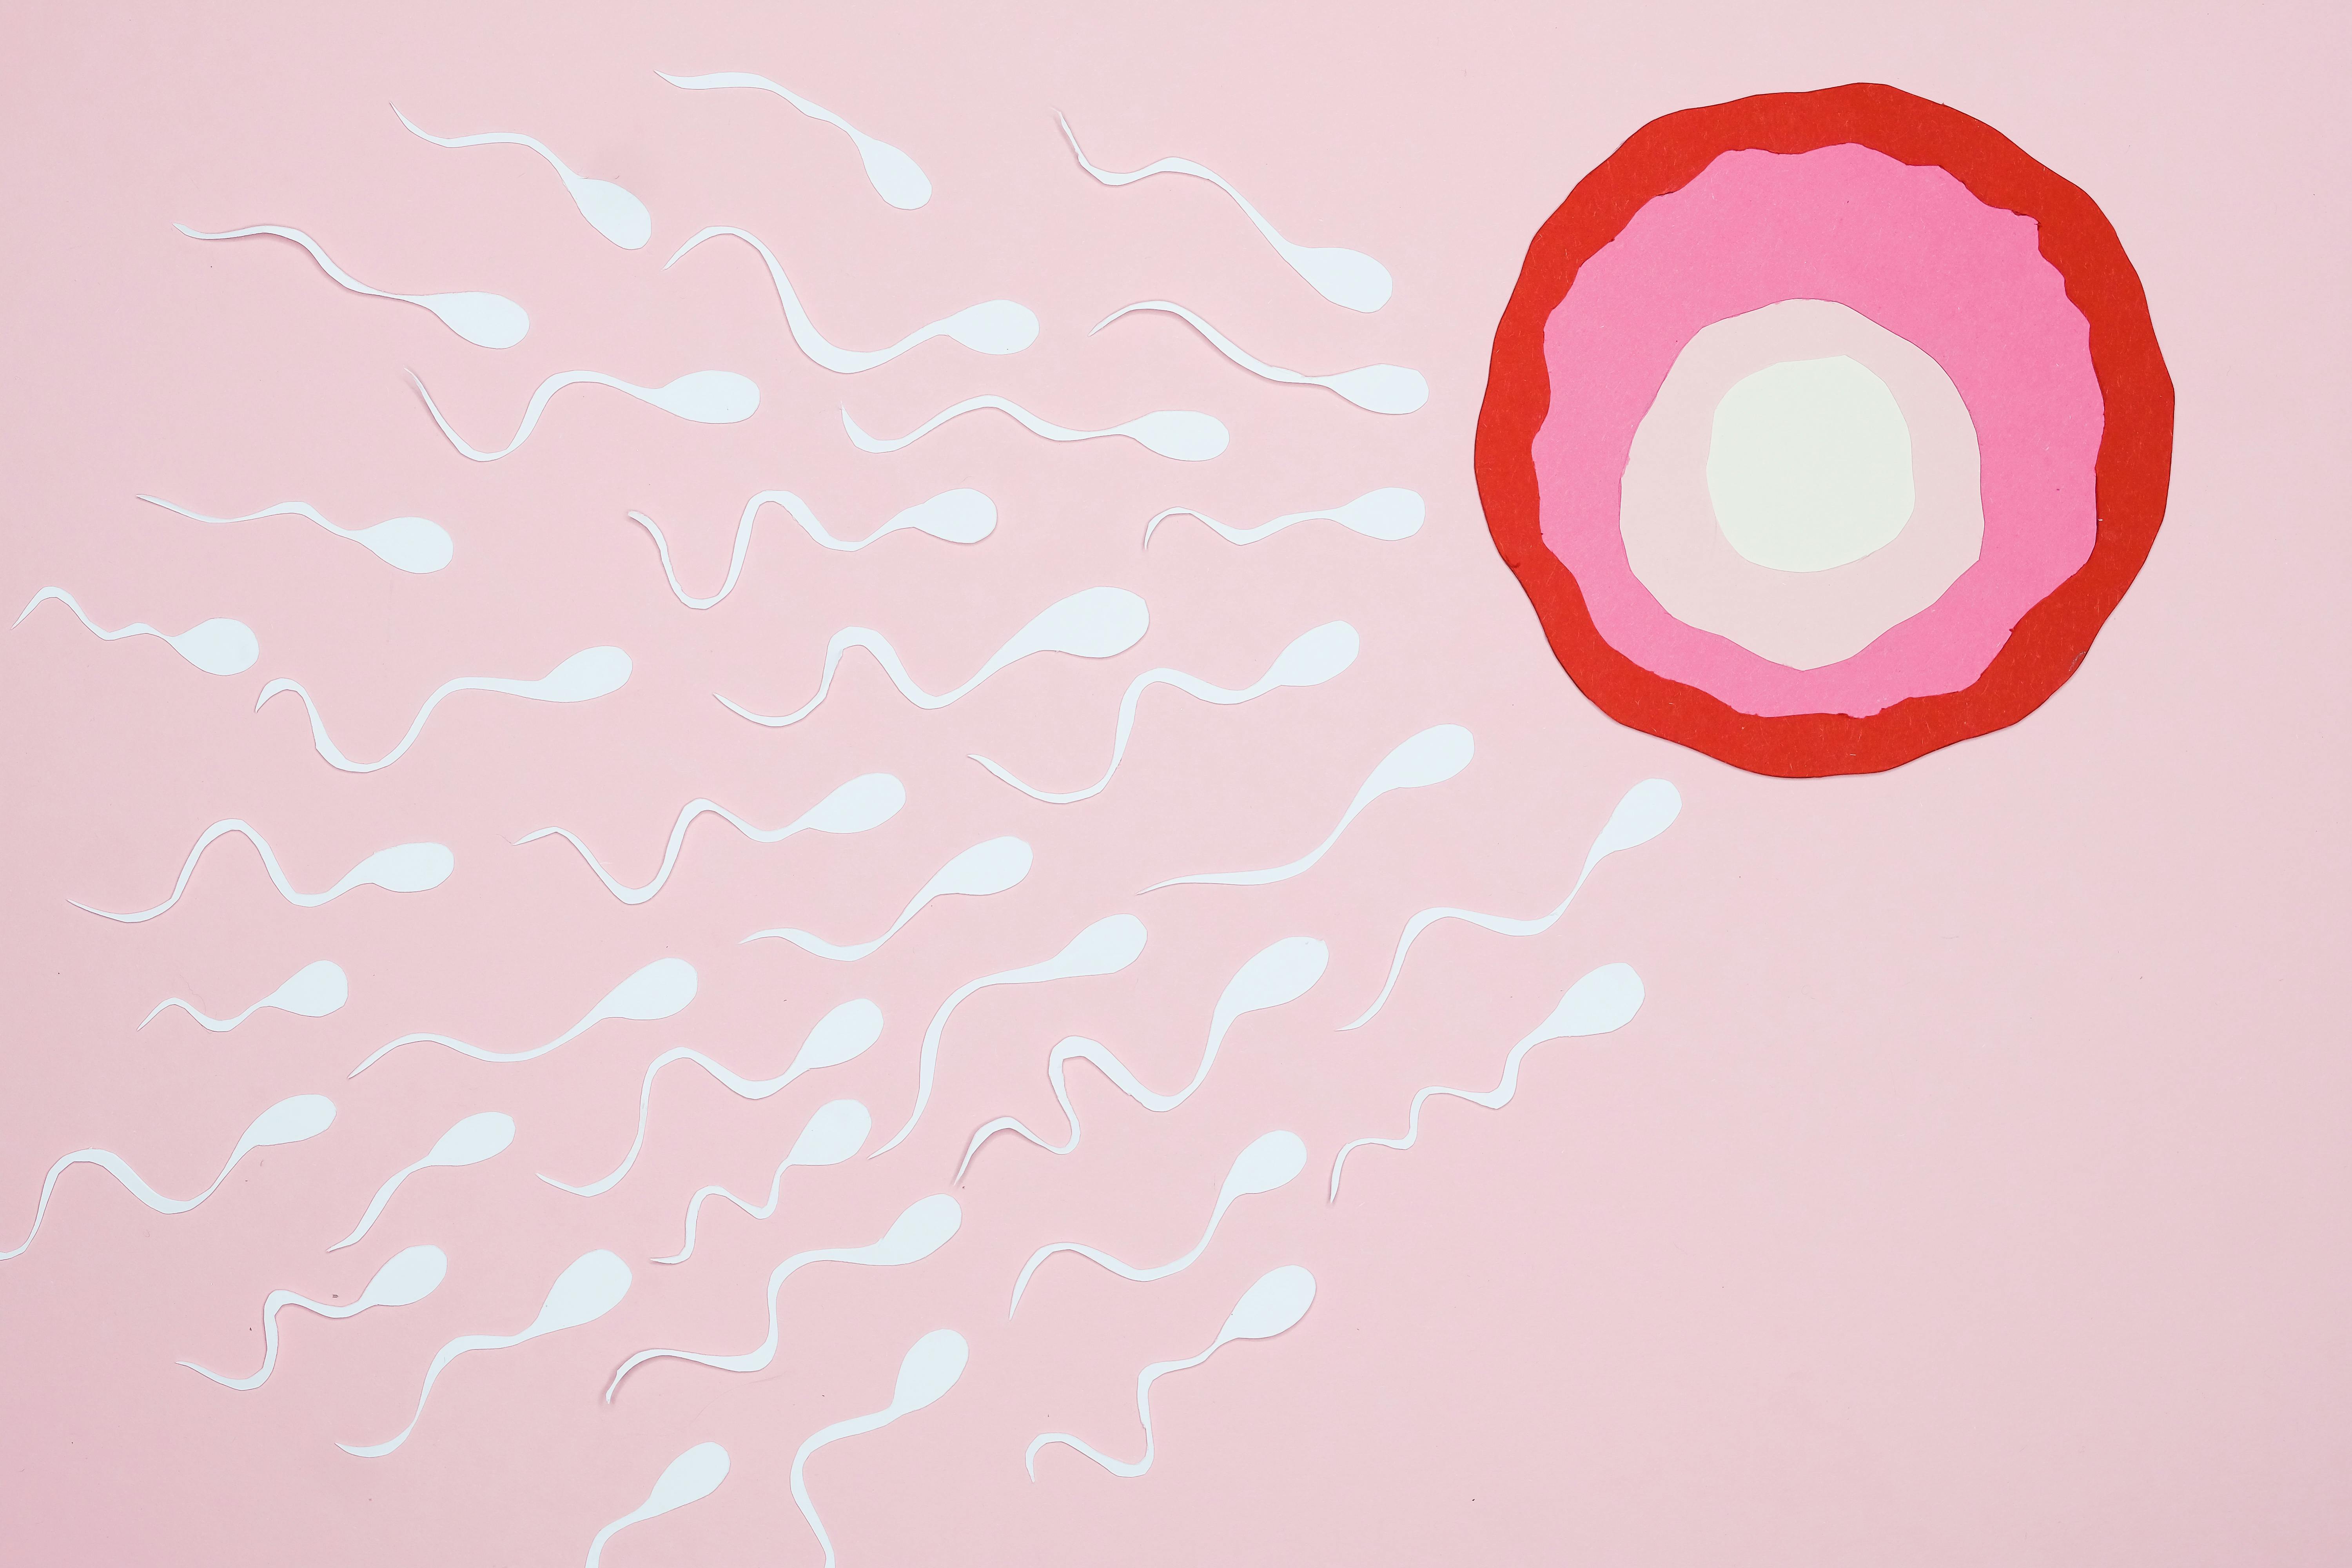 Схематичное изображение сперматозоидов и яйцеклетки. Текст: Исследование: мио-инозитол улучшает свойства спермы и показатели половых гормонов в сыворотке крови у пациентов с идиопатическим бесплодием.